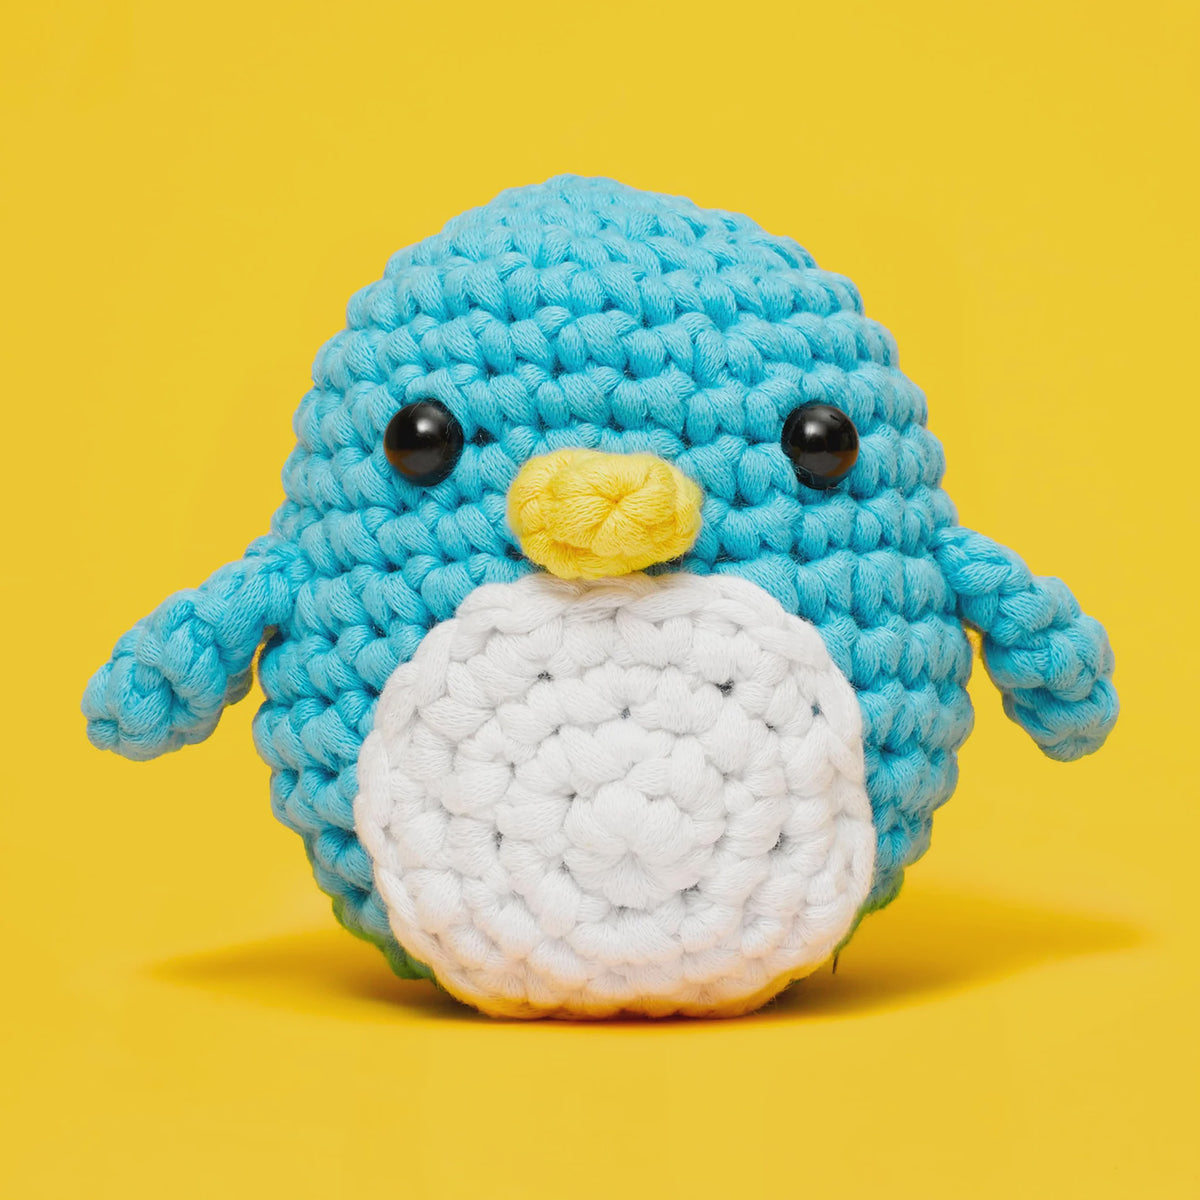 Pierre the Penguin - Crochet Kit